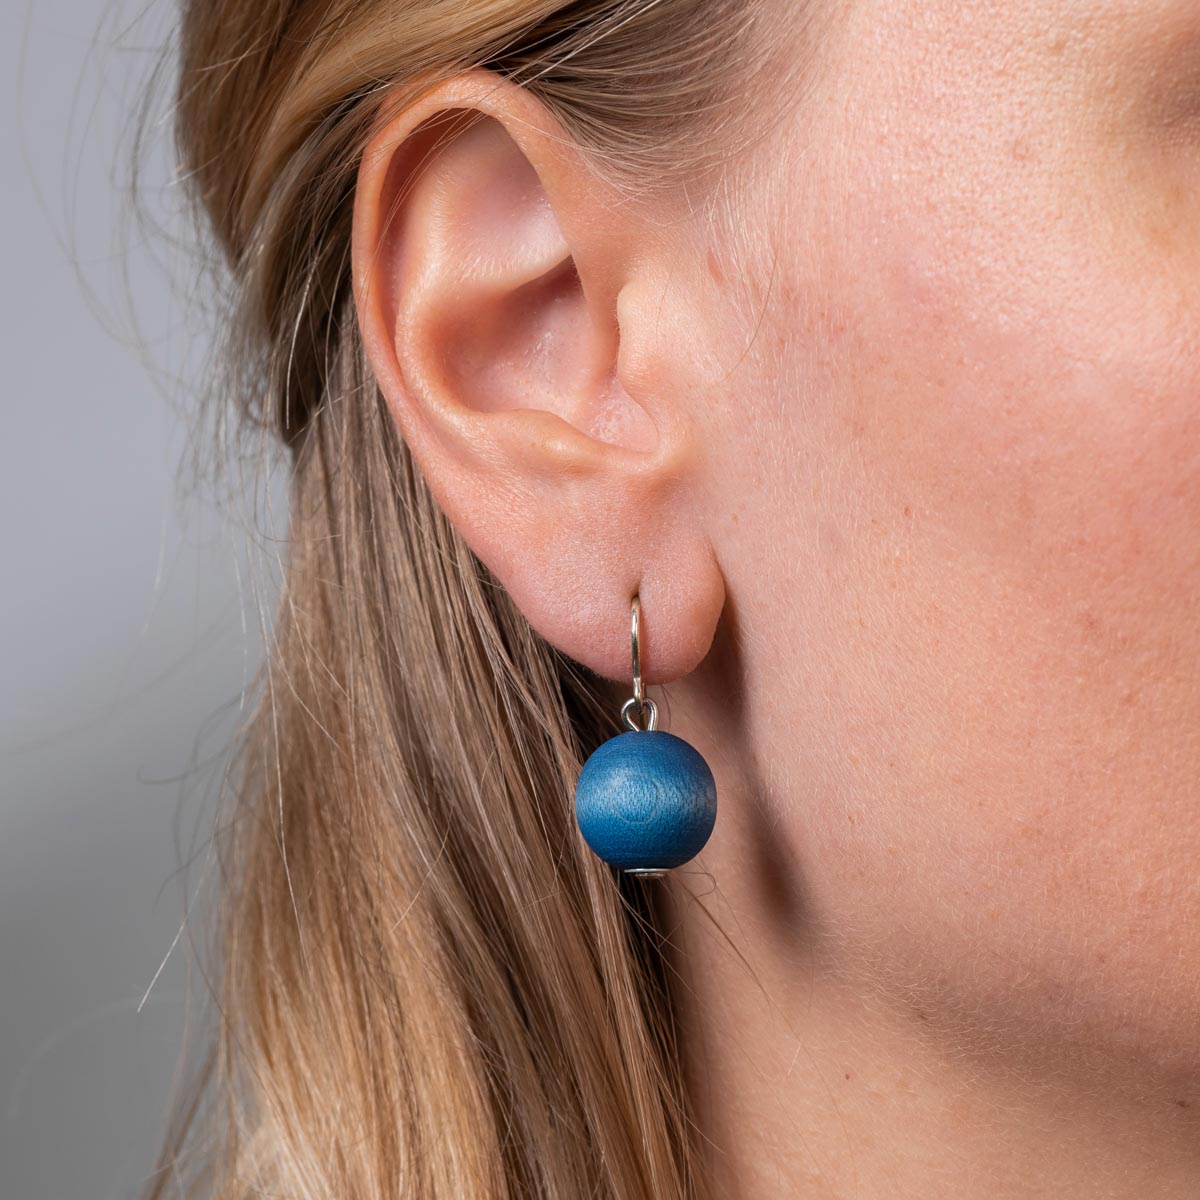 Karpalo earrings, blue